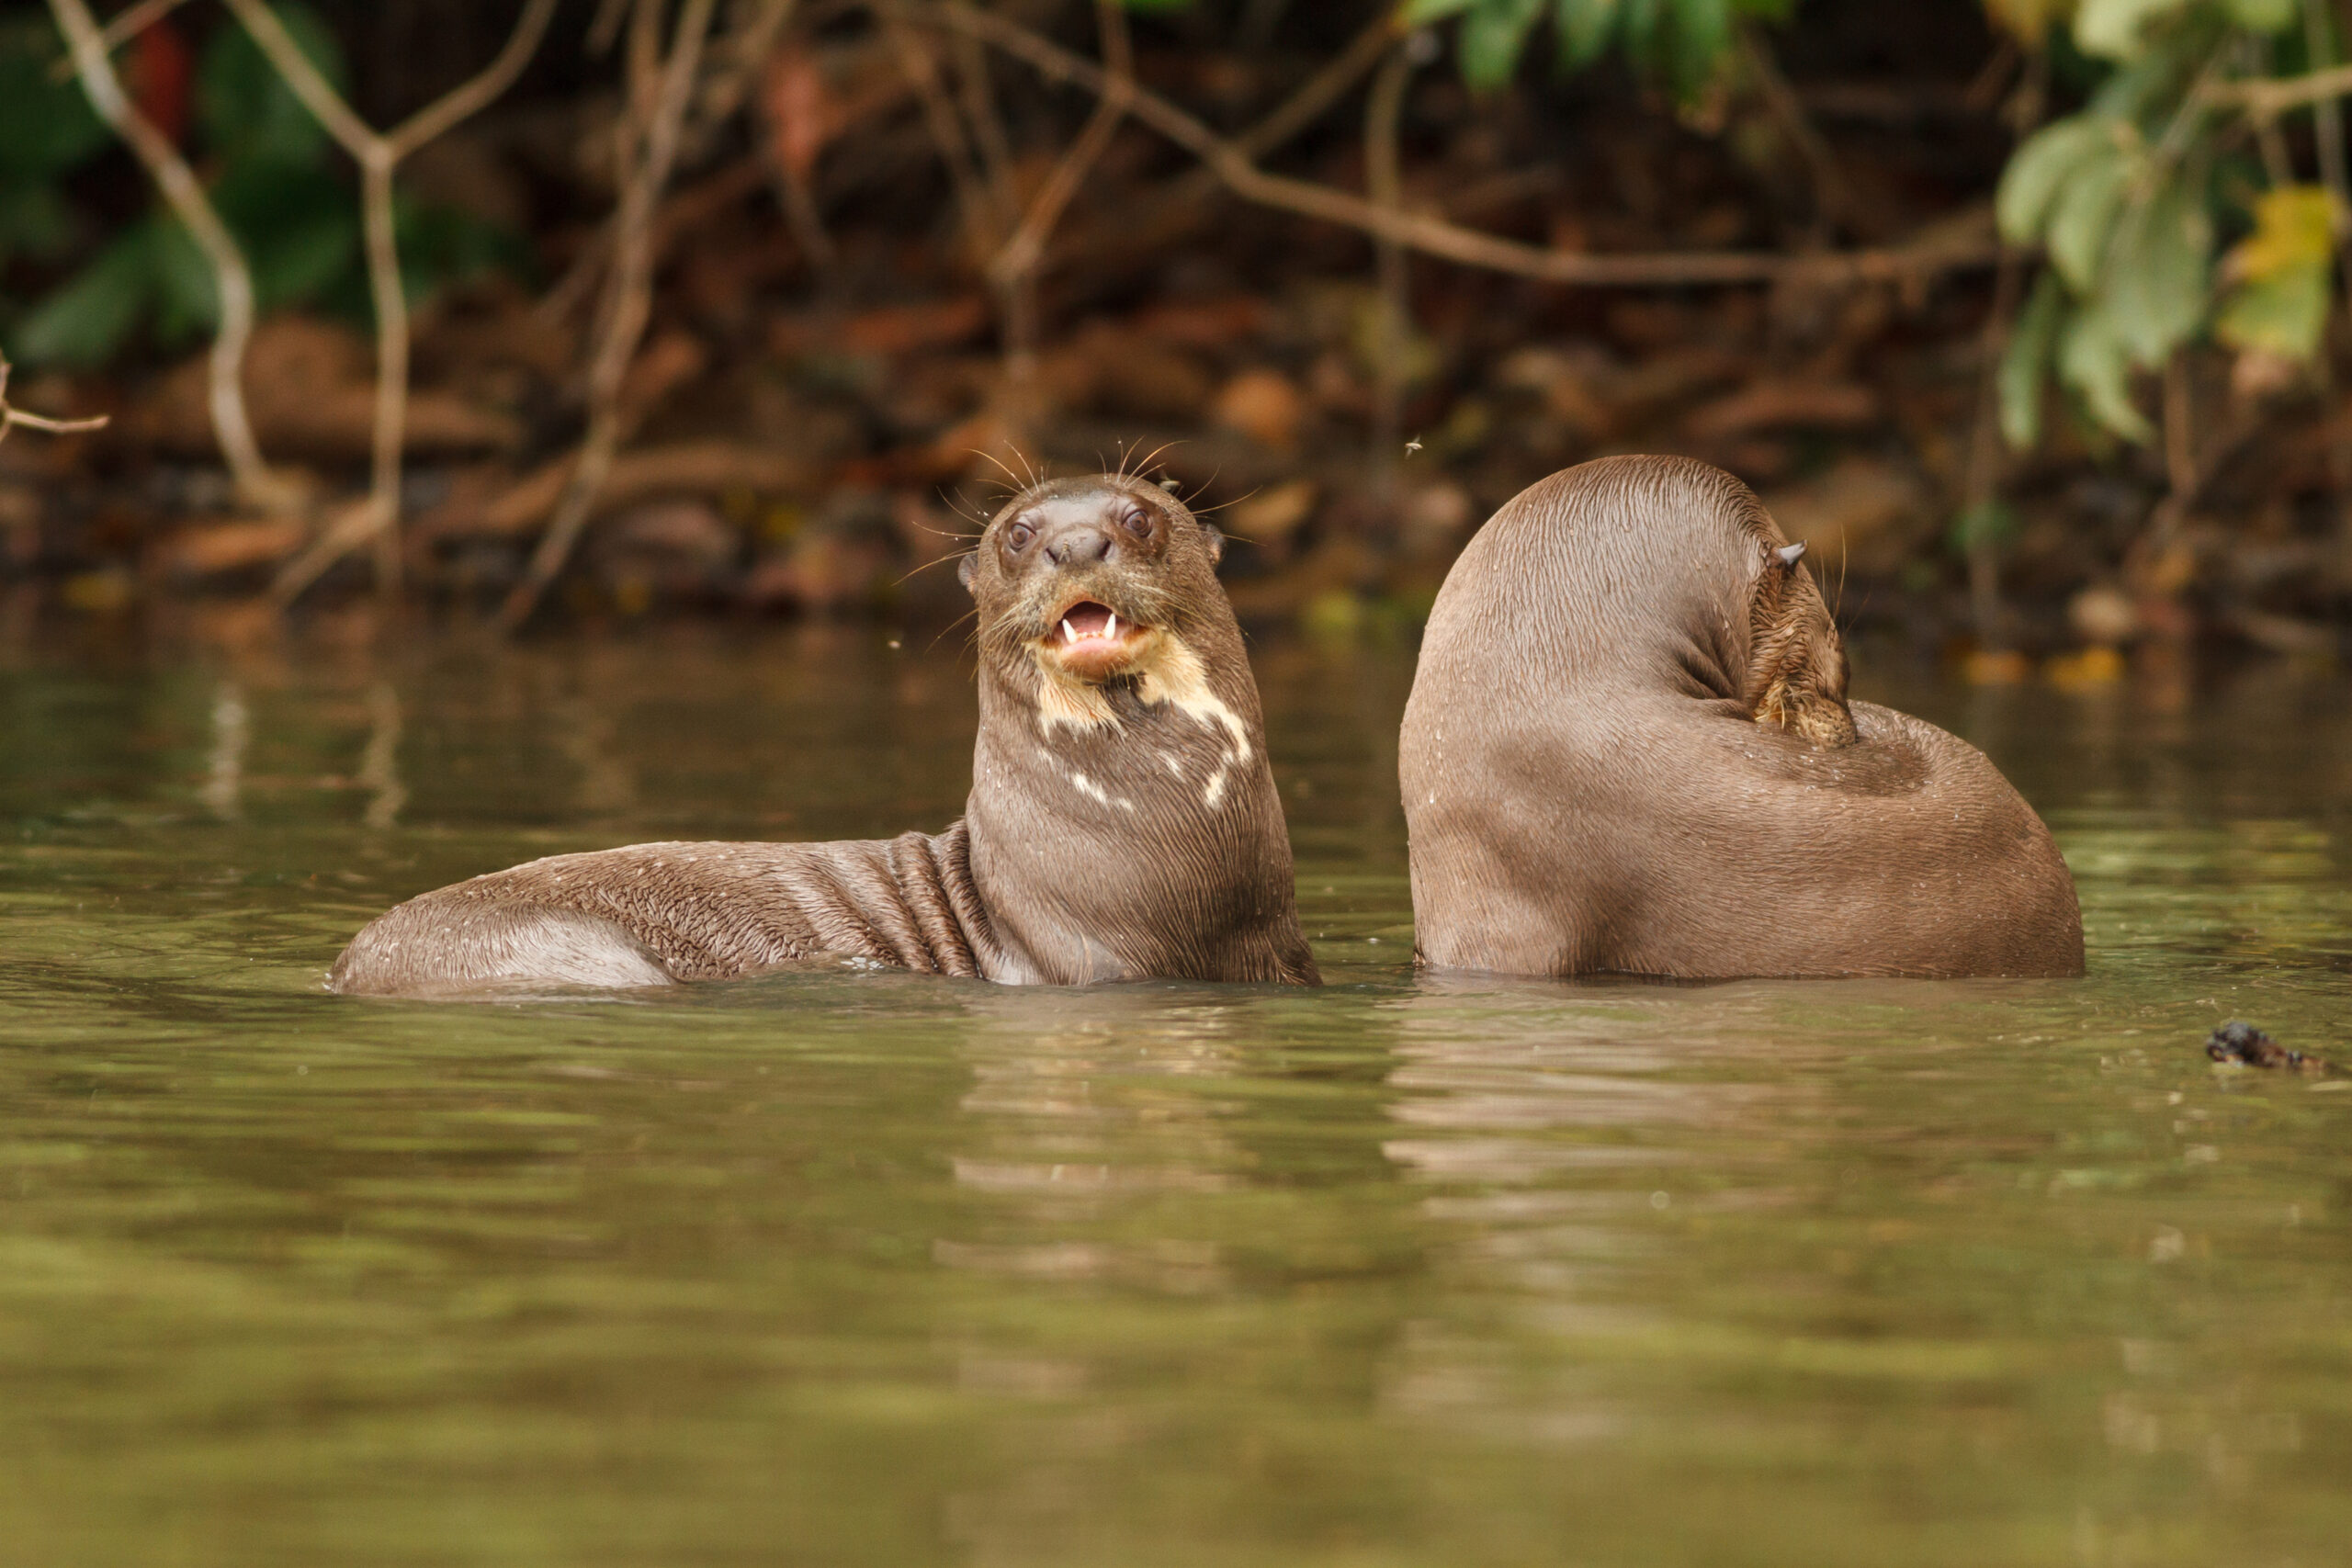 Giant River Otter in Peru